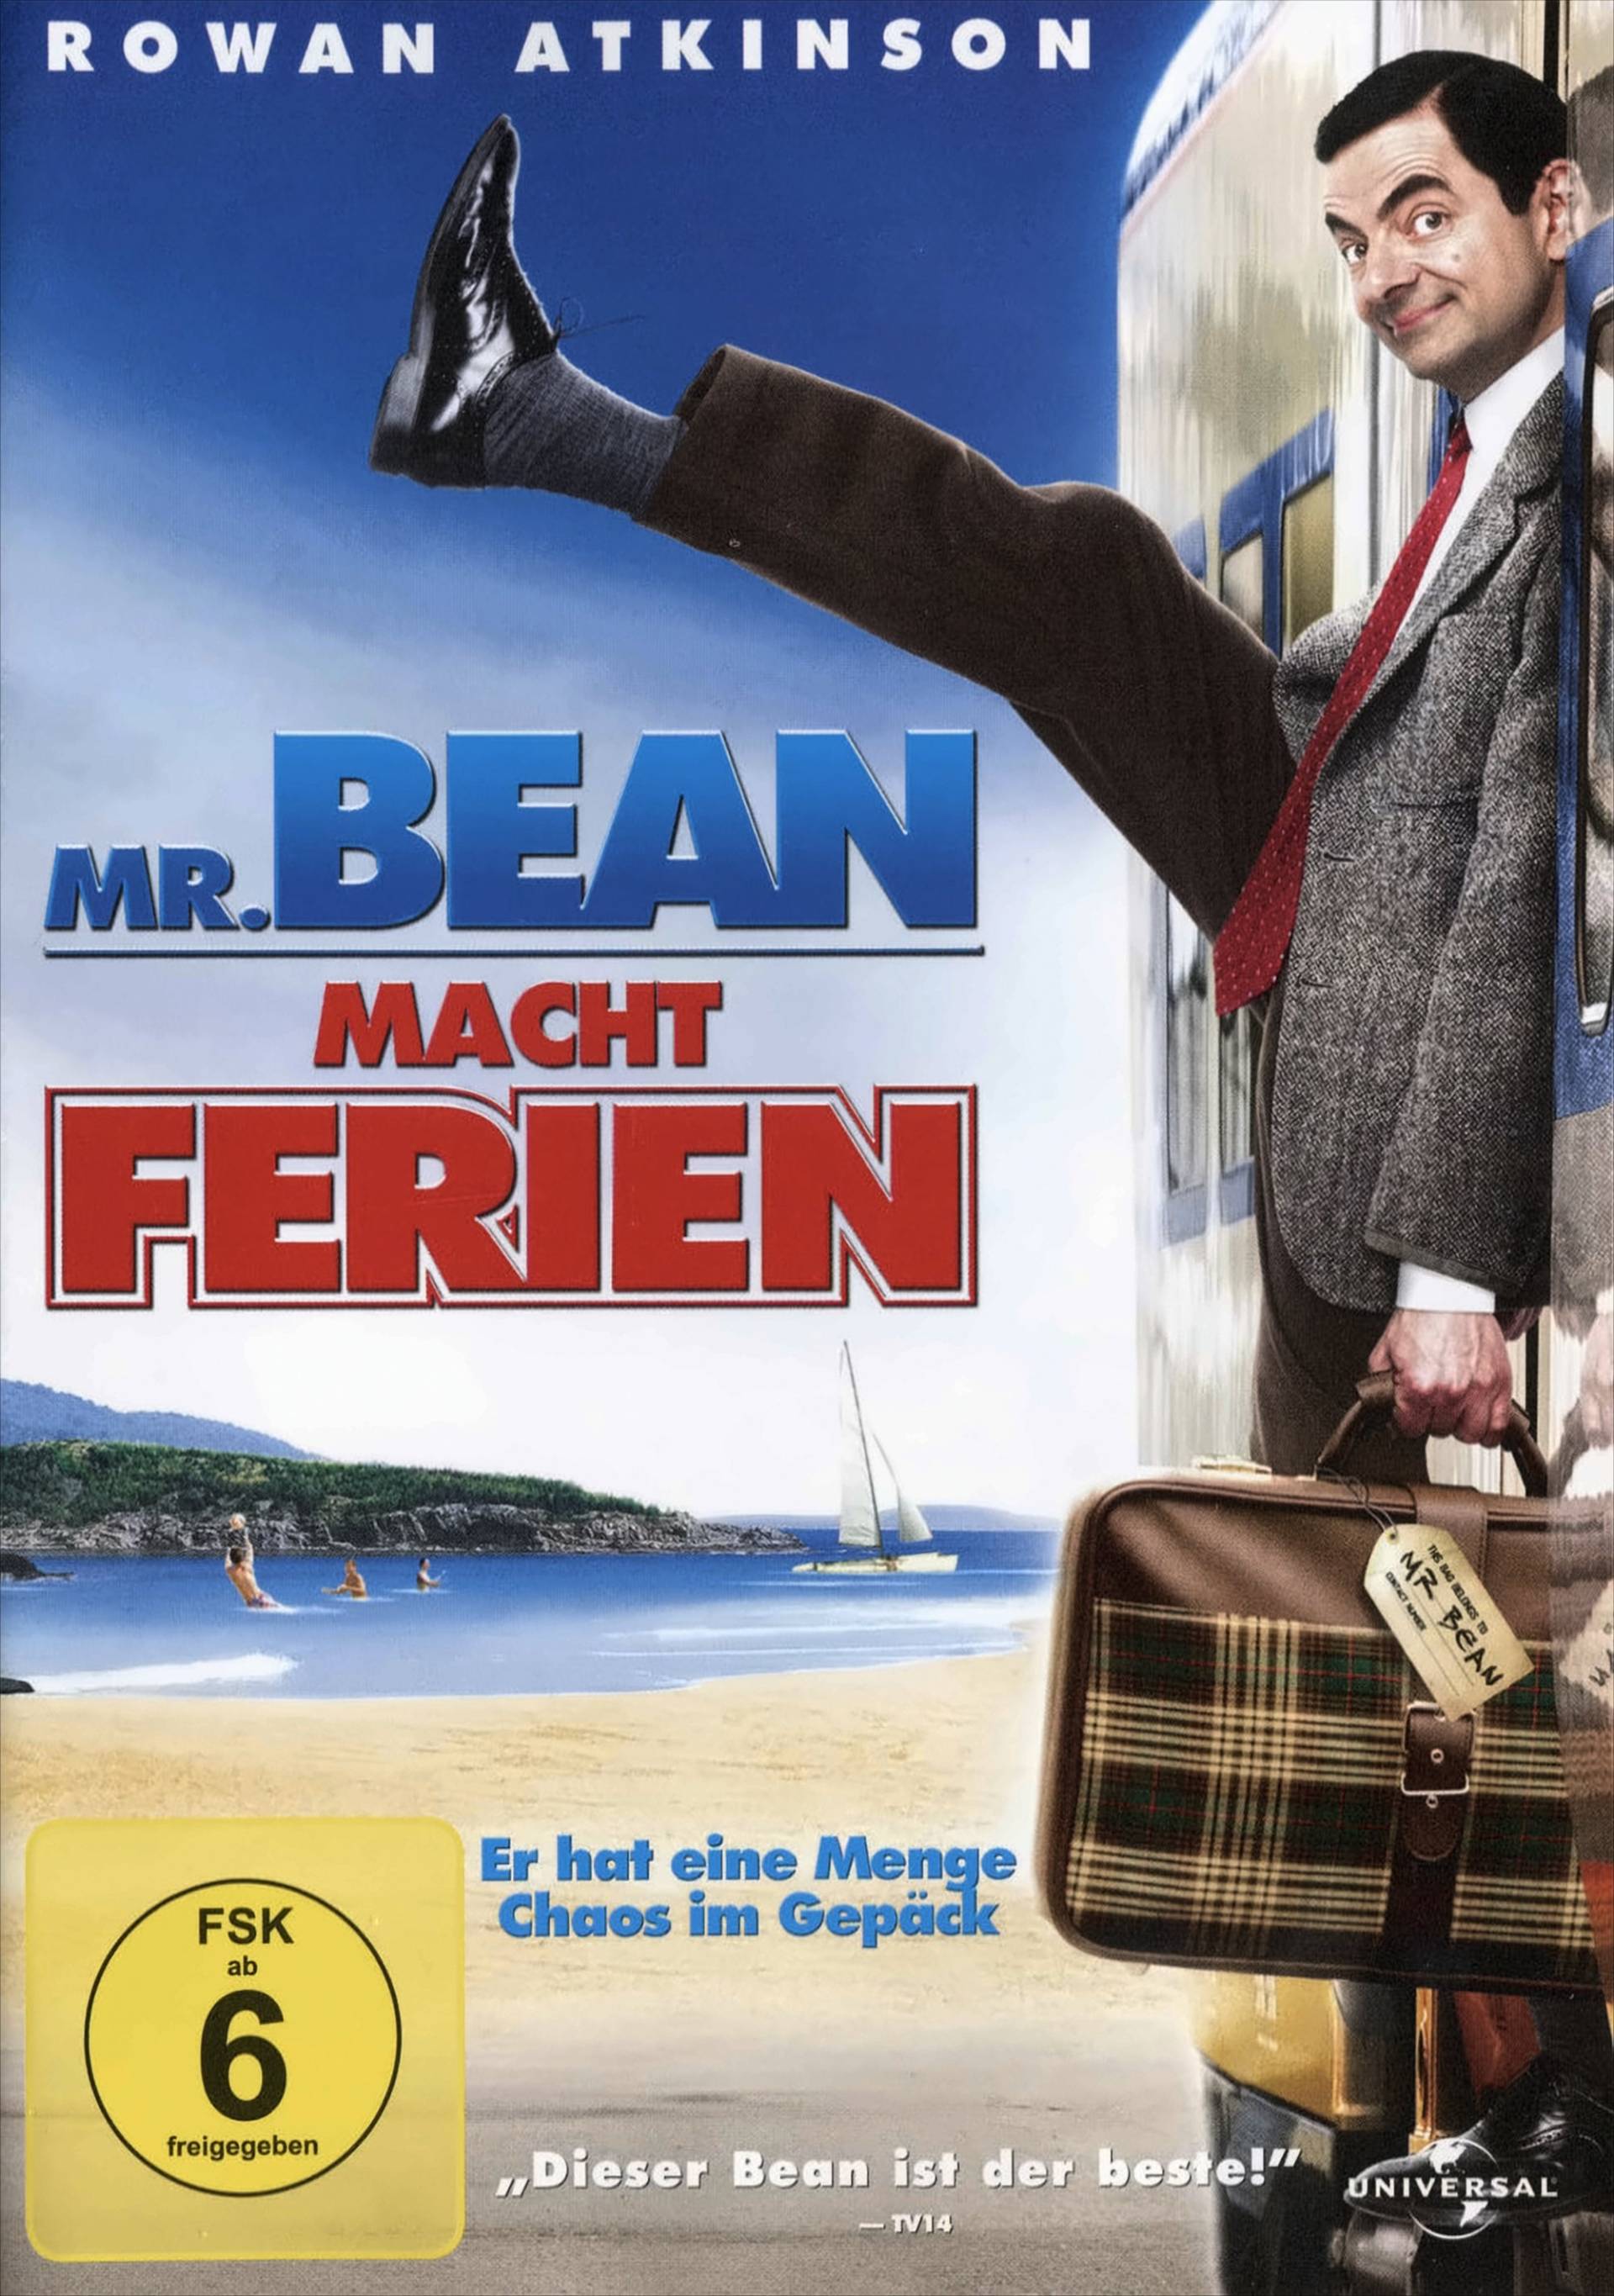 Mr. Bean macht Ferien von Universal Pictures